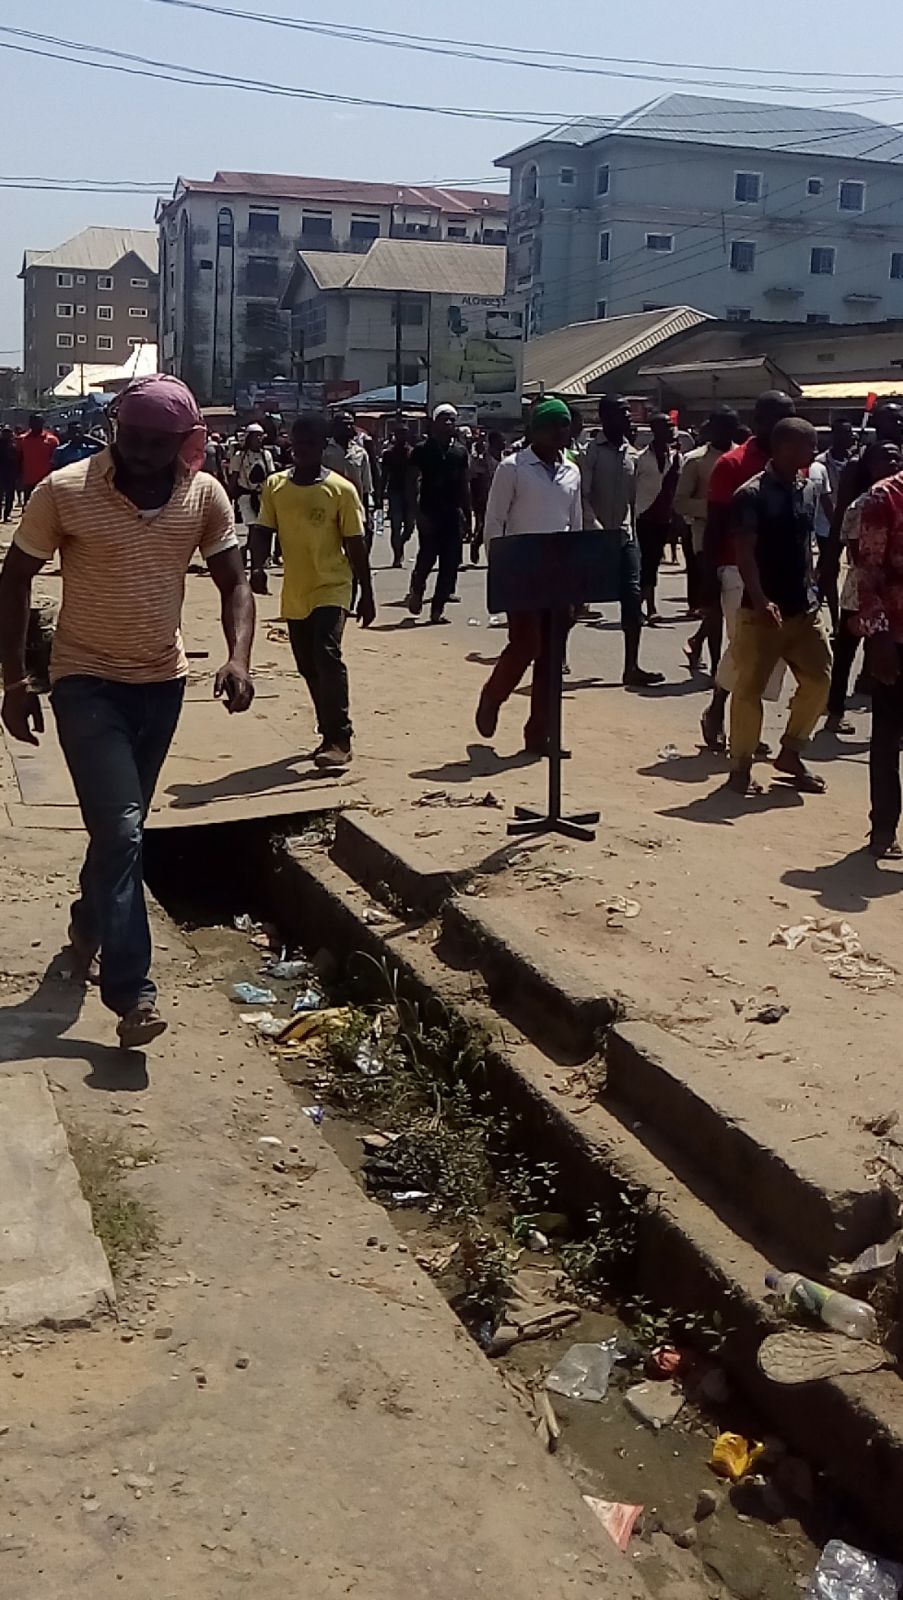 Eine Gruppe junger Demonstranten versammelt sich auf den Straßen Nigerias, um gegen Korruption und Altersdiskriminierung zu protestieren. Sie halten Schilder und Transparente mit Forderungen nach Gerechtigkeit und Veränderung. Die Stimmung ist energiegeladen und hoffnungsvoll.